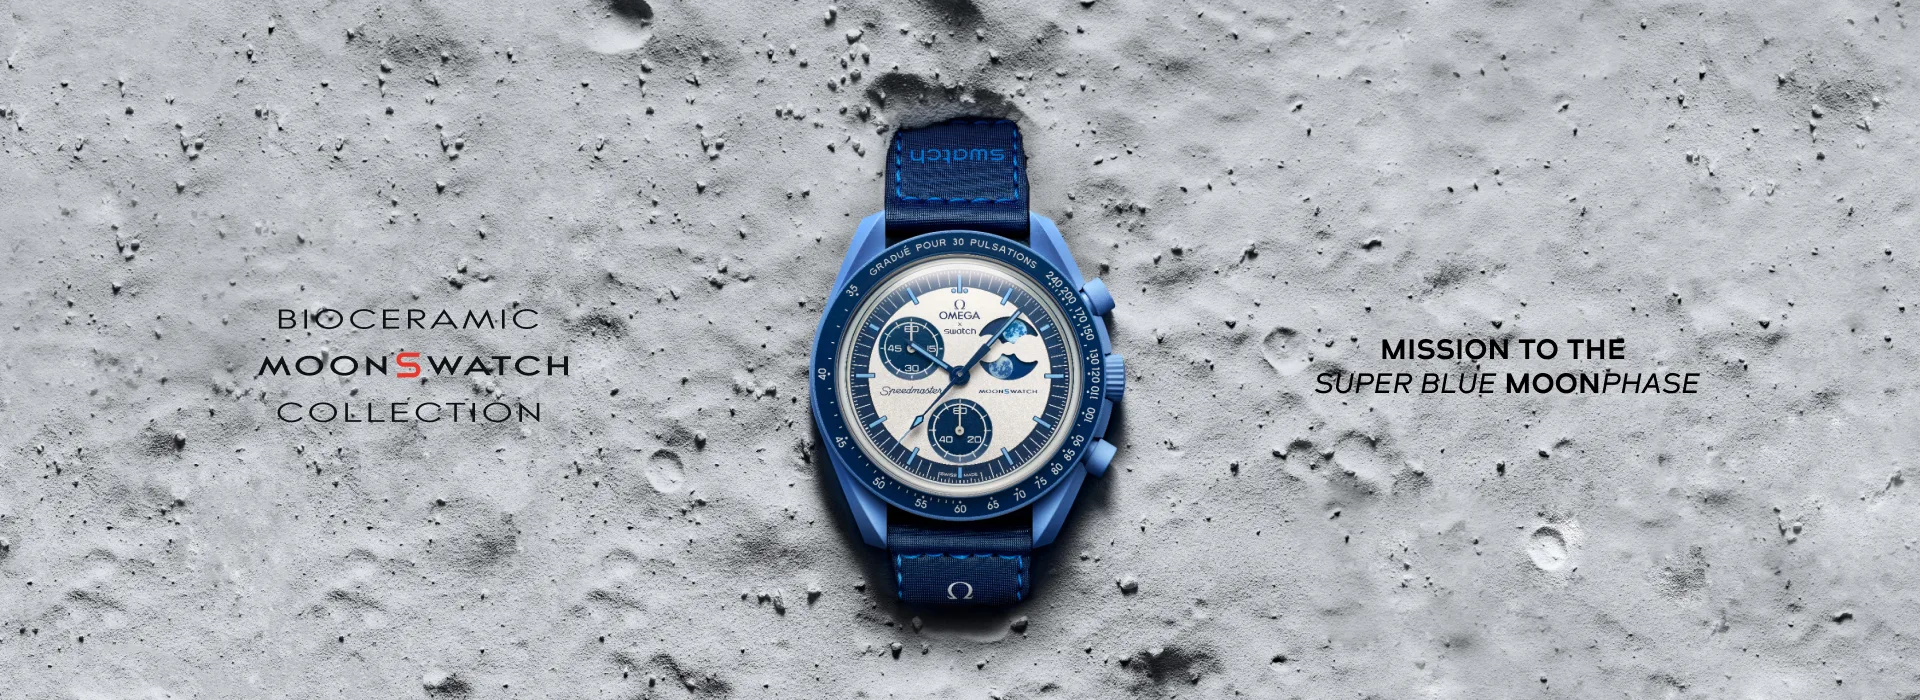 Ya está aquí el Bioceramic MoonSwatch MISSION TO THE SUPER BLUE MOONPHASE, un reloj que celebra la alegría del verano y la primera superluna azul del año.